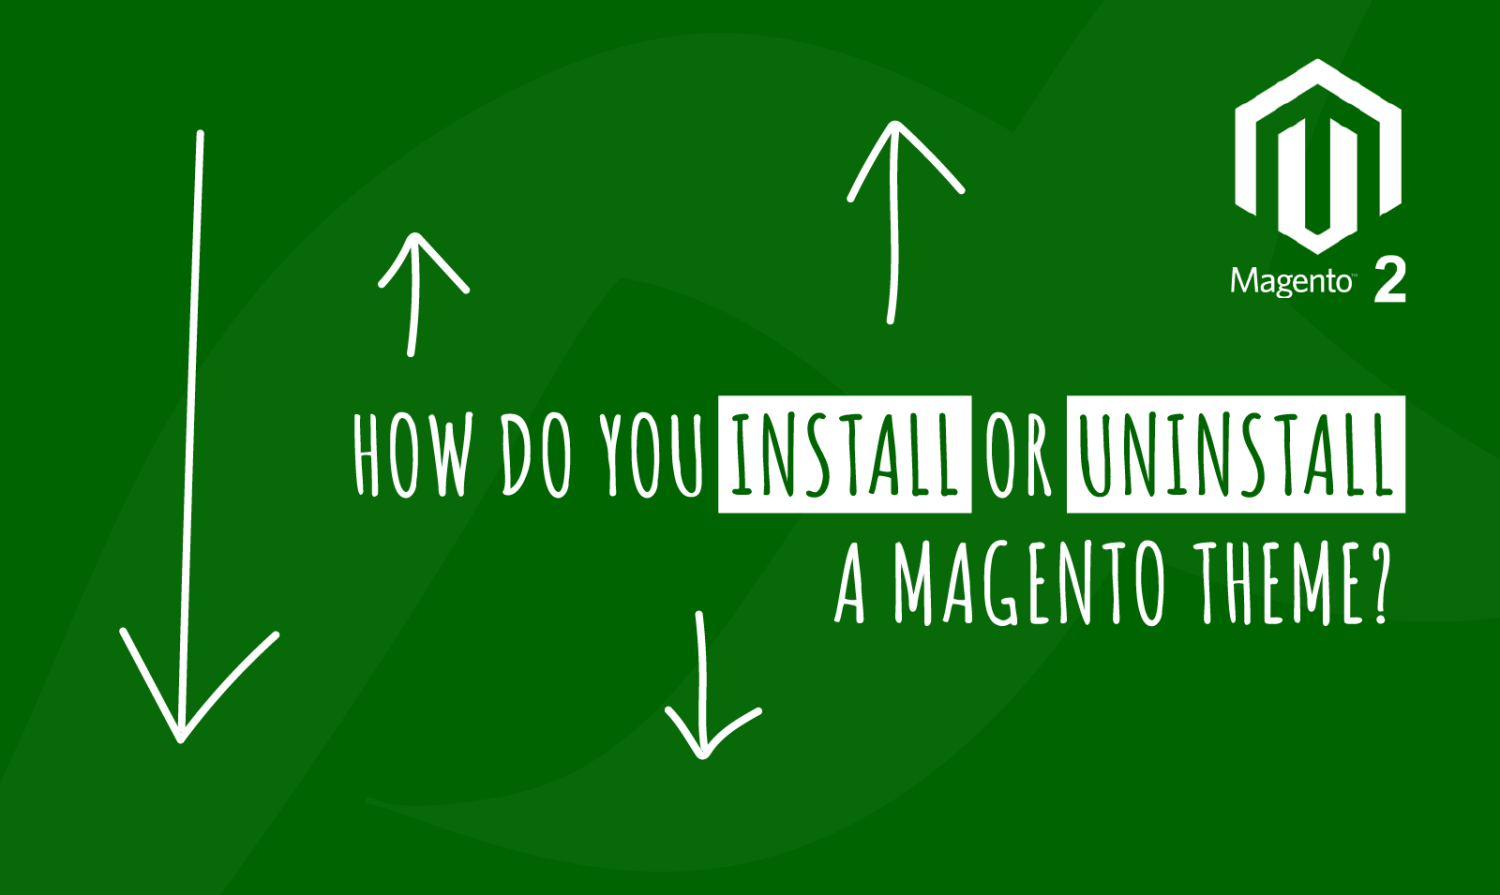 How do you Install or Uninstall a Magento Theme?